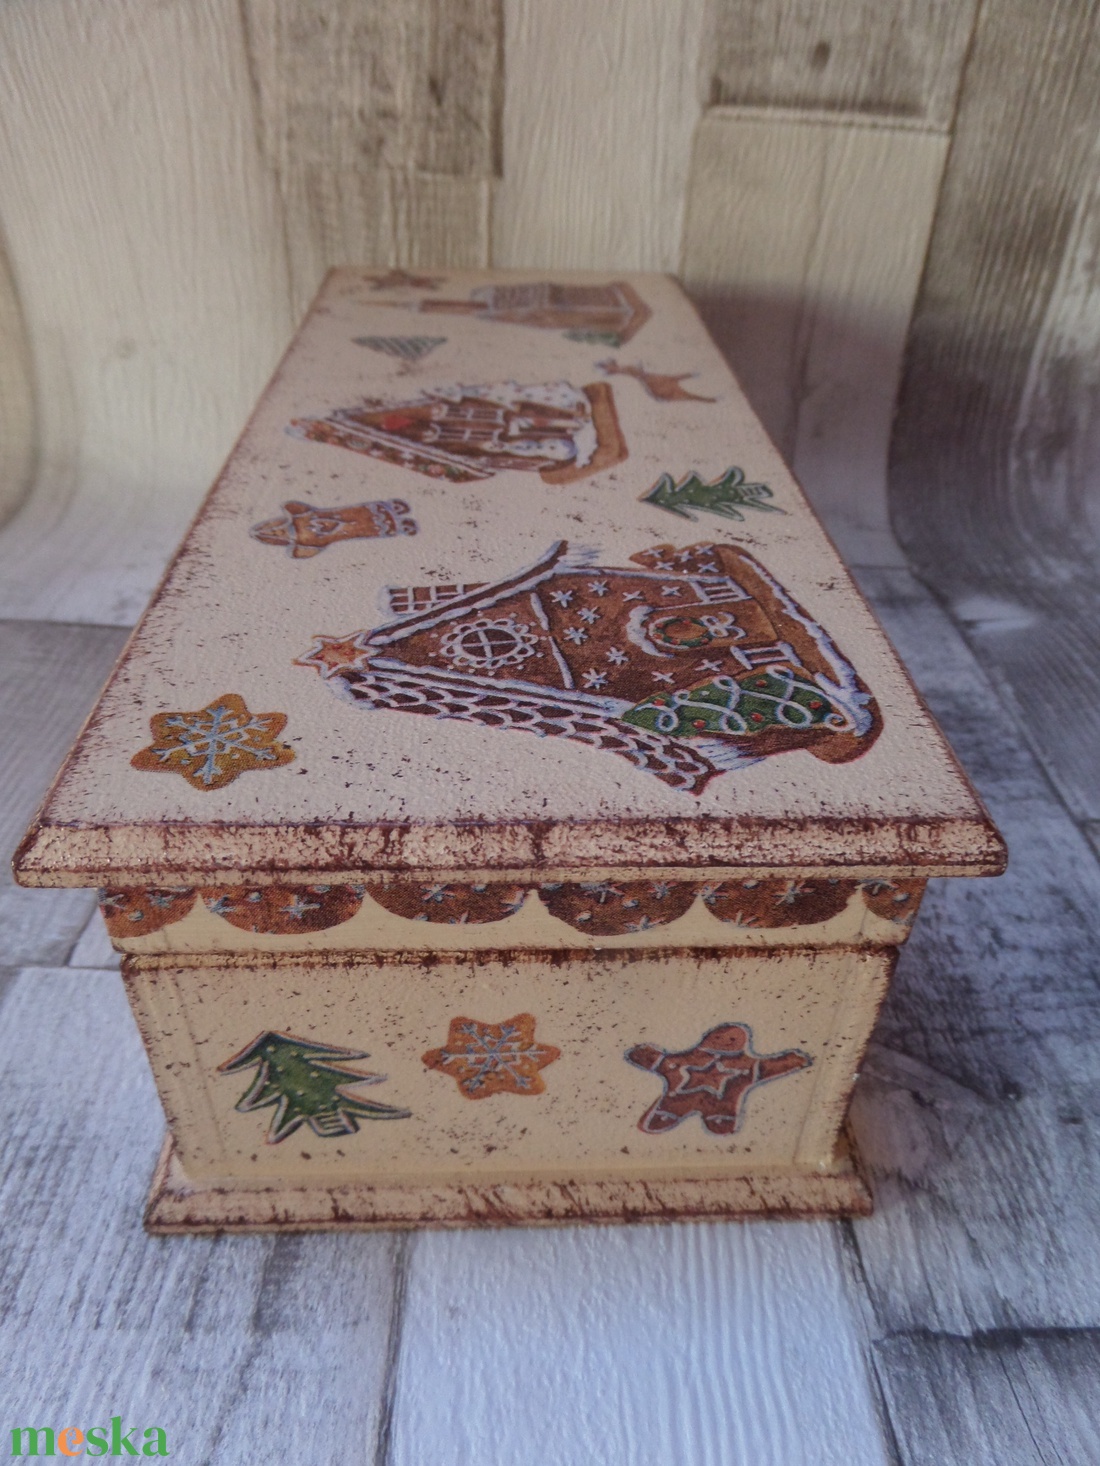 Bejglis doboz,sütis doboz mézeskalács mintával - otthon & lakás - dekoráció - asztal és polc dekoráció - díszdoboz - Meska.hu